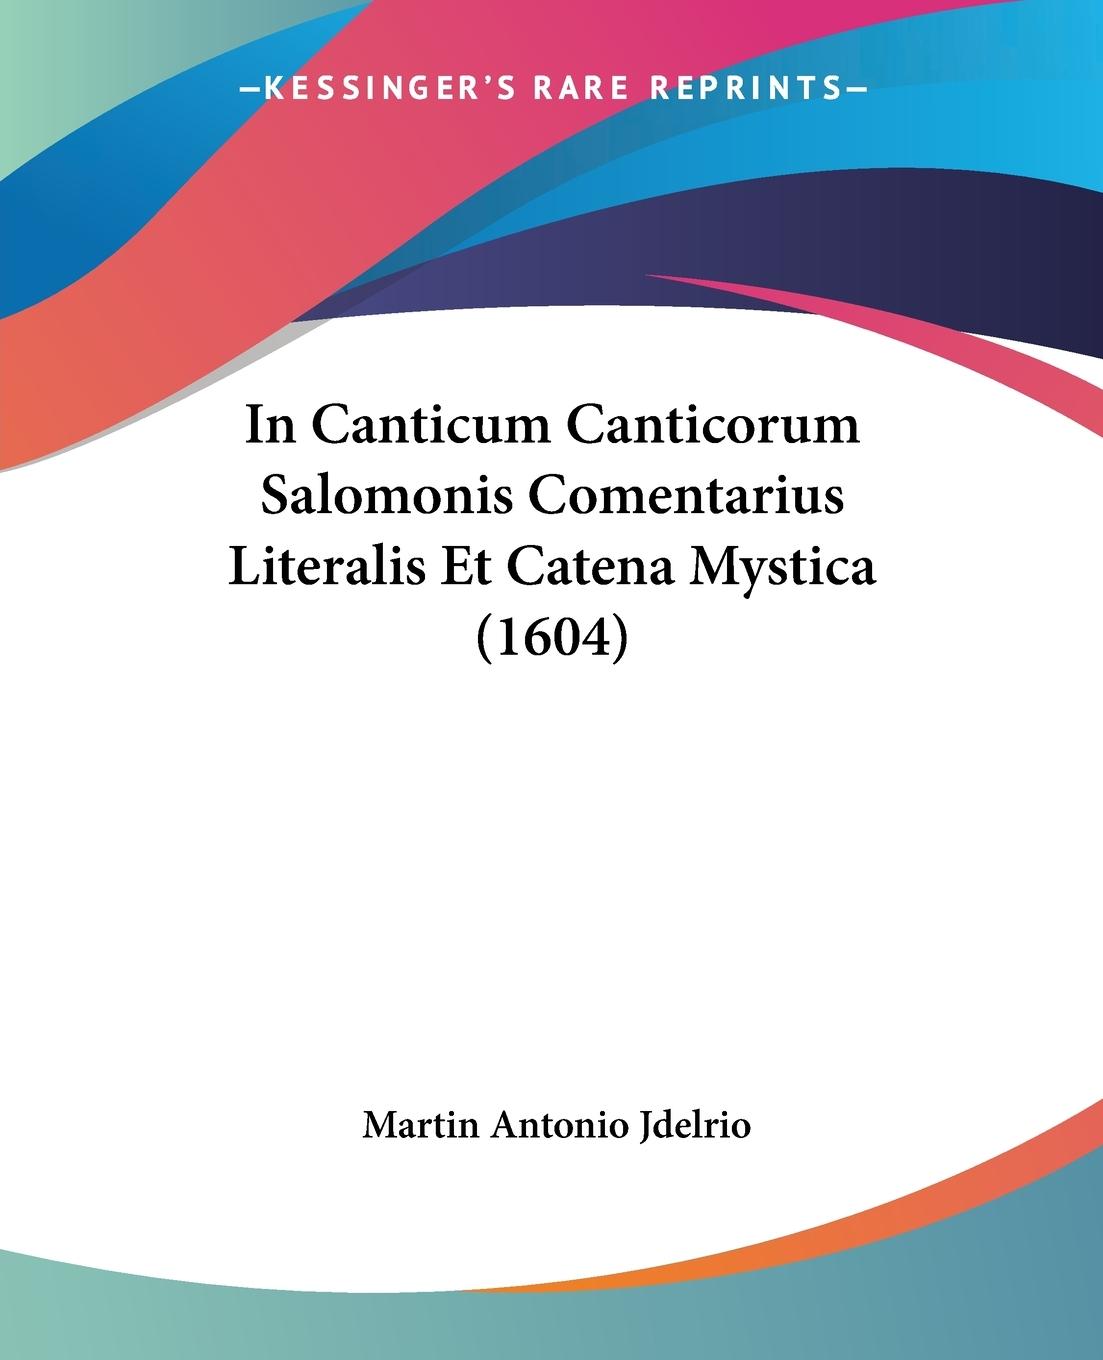 In Canticum Canticorum Salomonis Comentarius Literalis Et Catena Mystica (1604) - Jdelrio, Martin Antonio